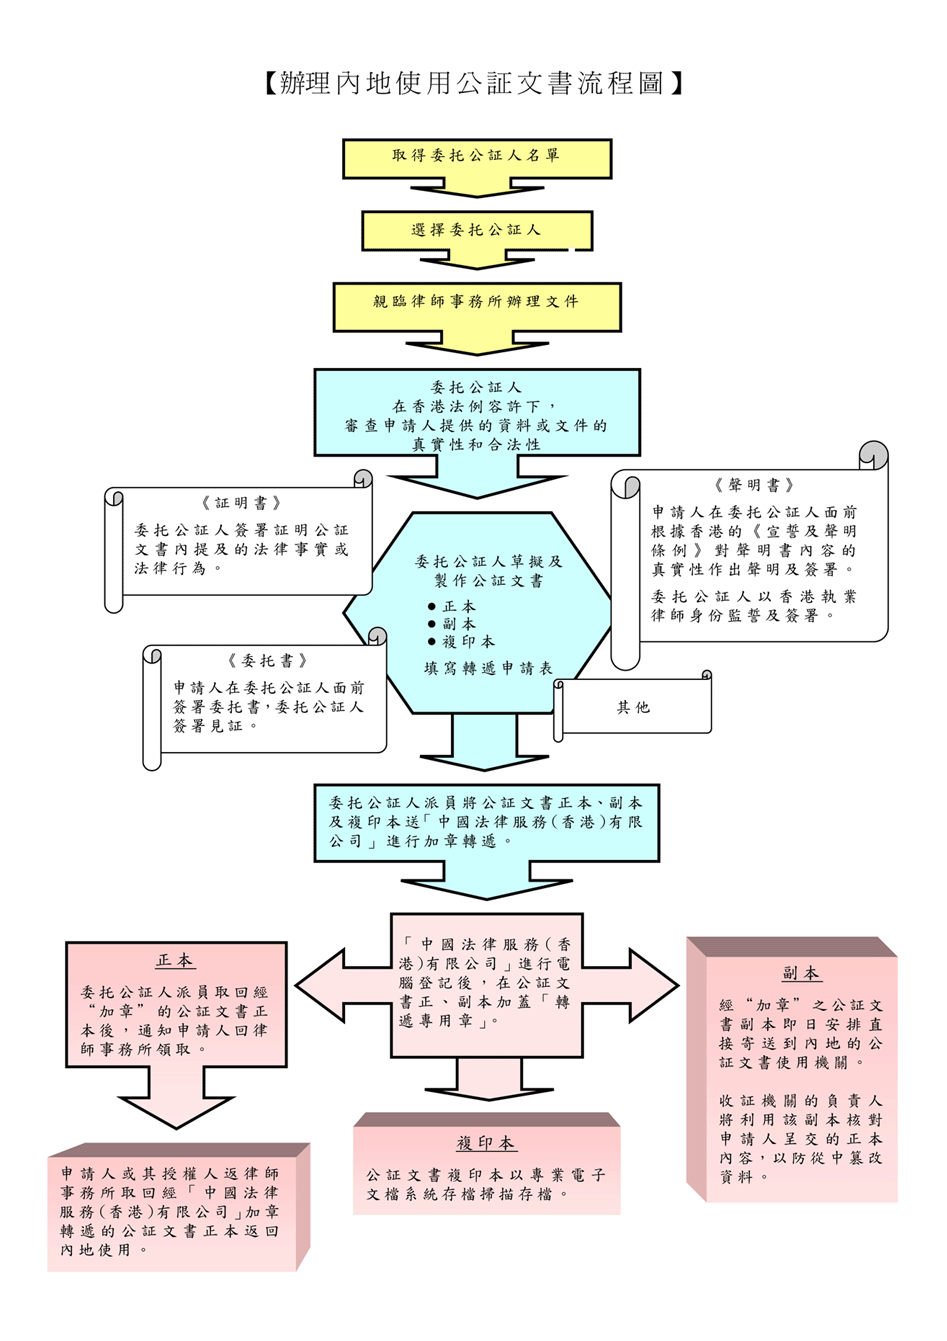 香港公司公证流程图